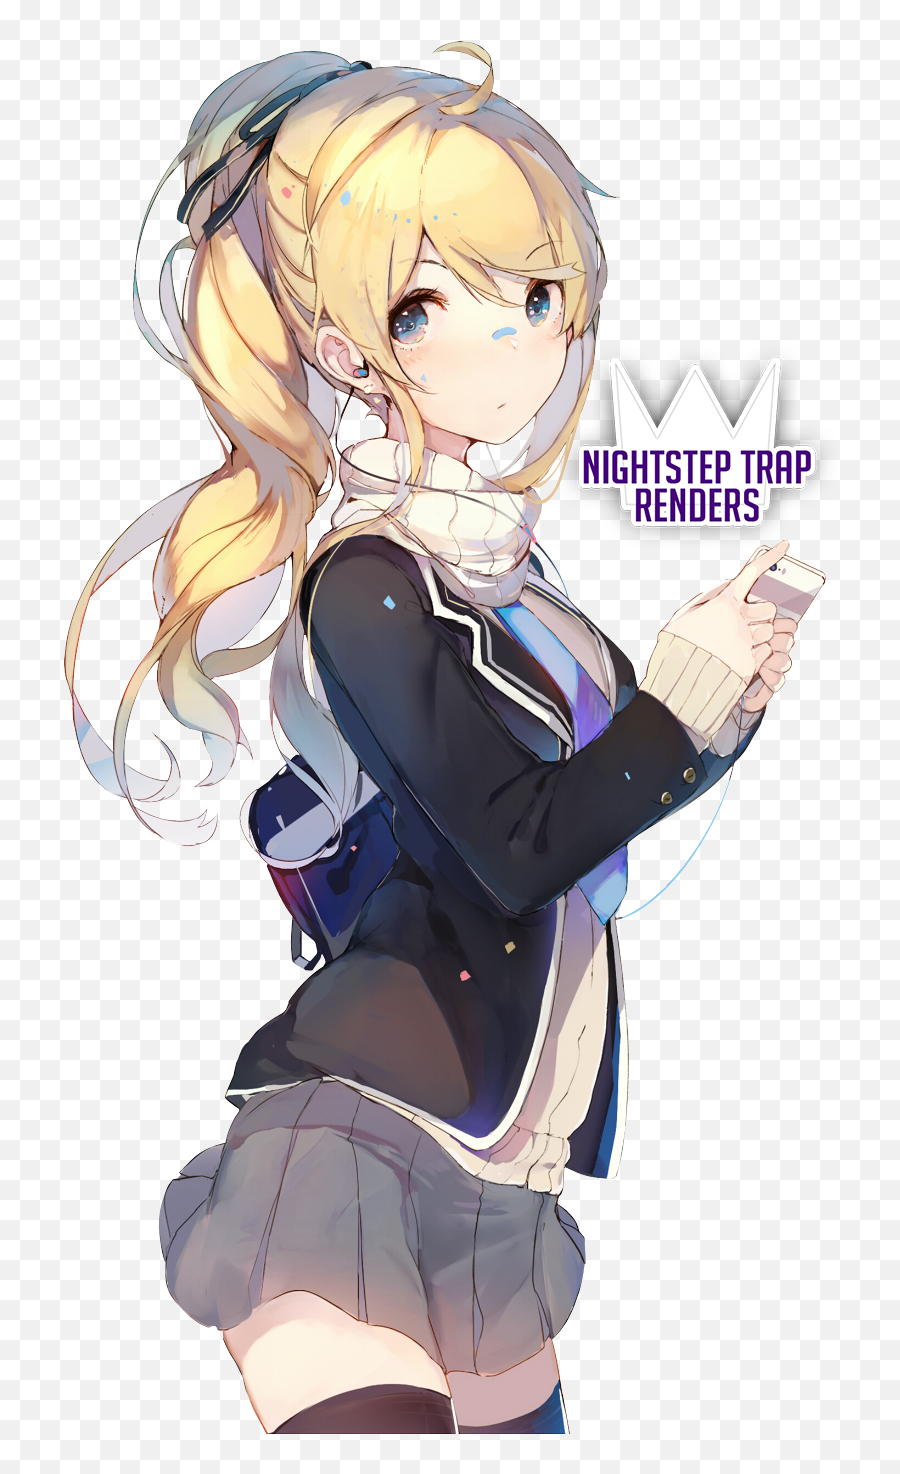 Nightsteptrap123 Cute Anime Girl Render - Render Anime Girls Cute Png,Cute Anime Girl Transparent